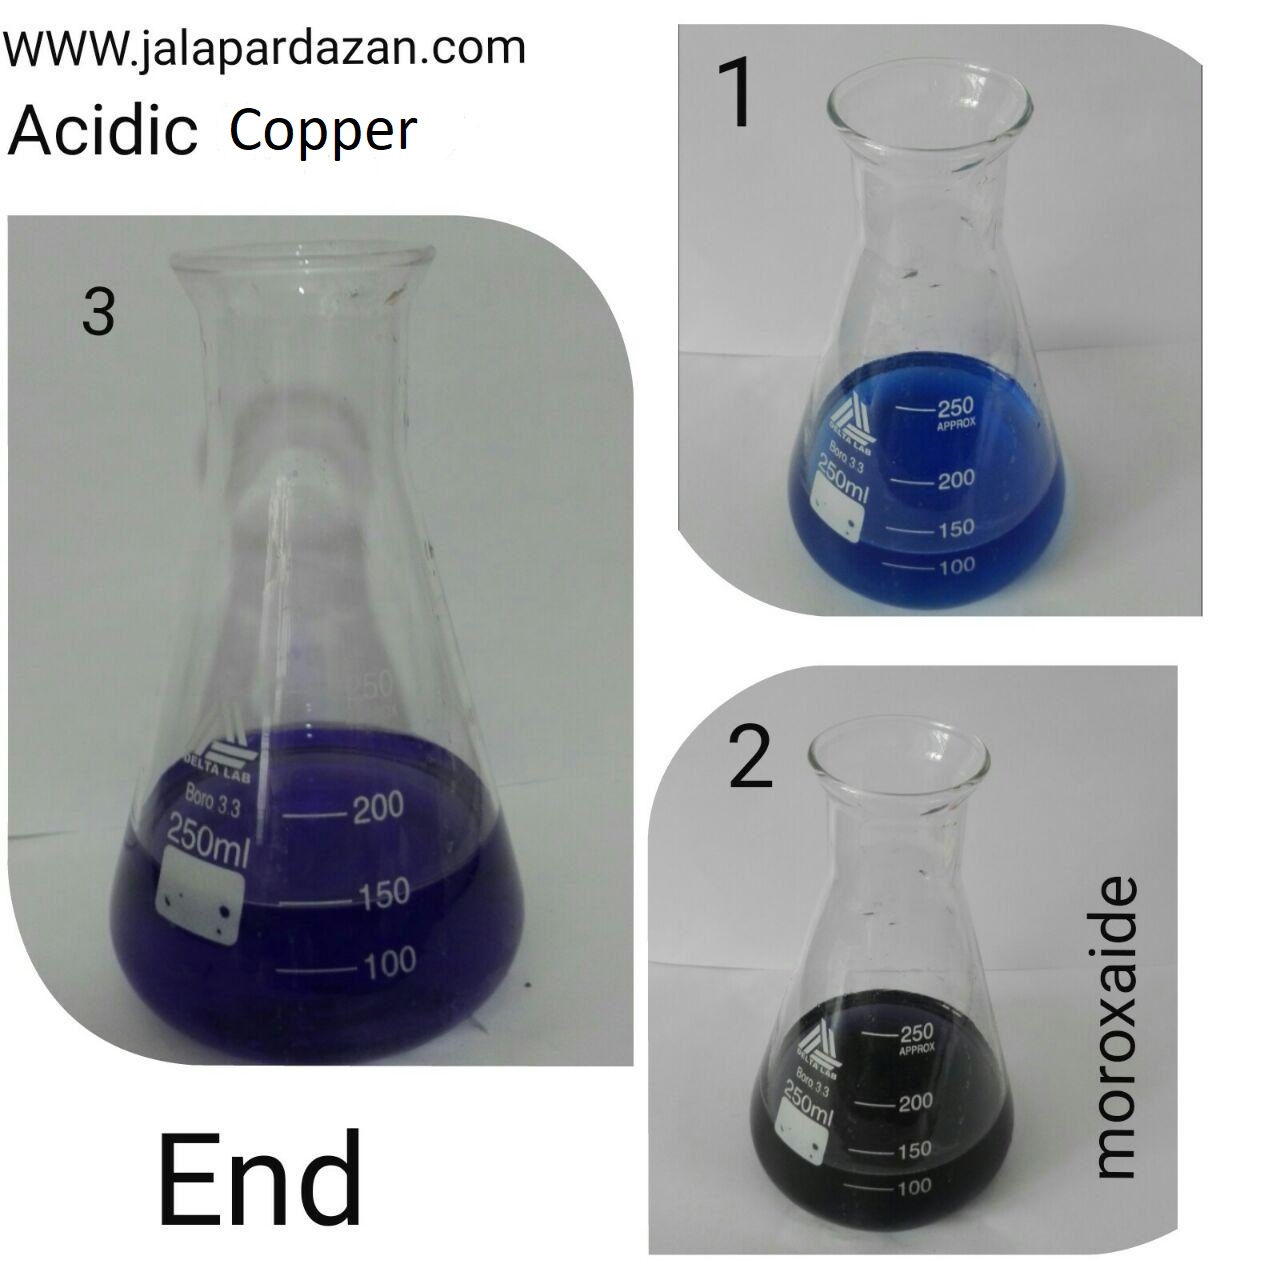 analise acidic copper